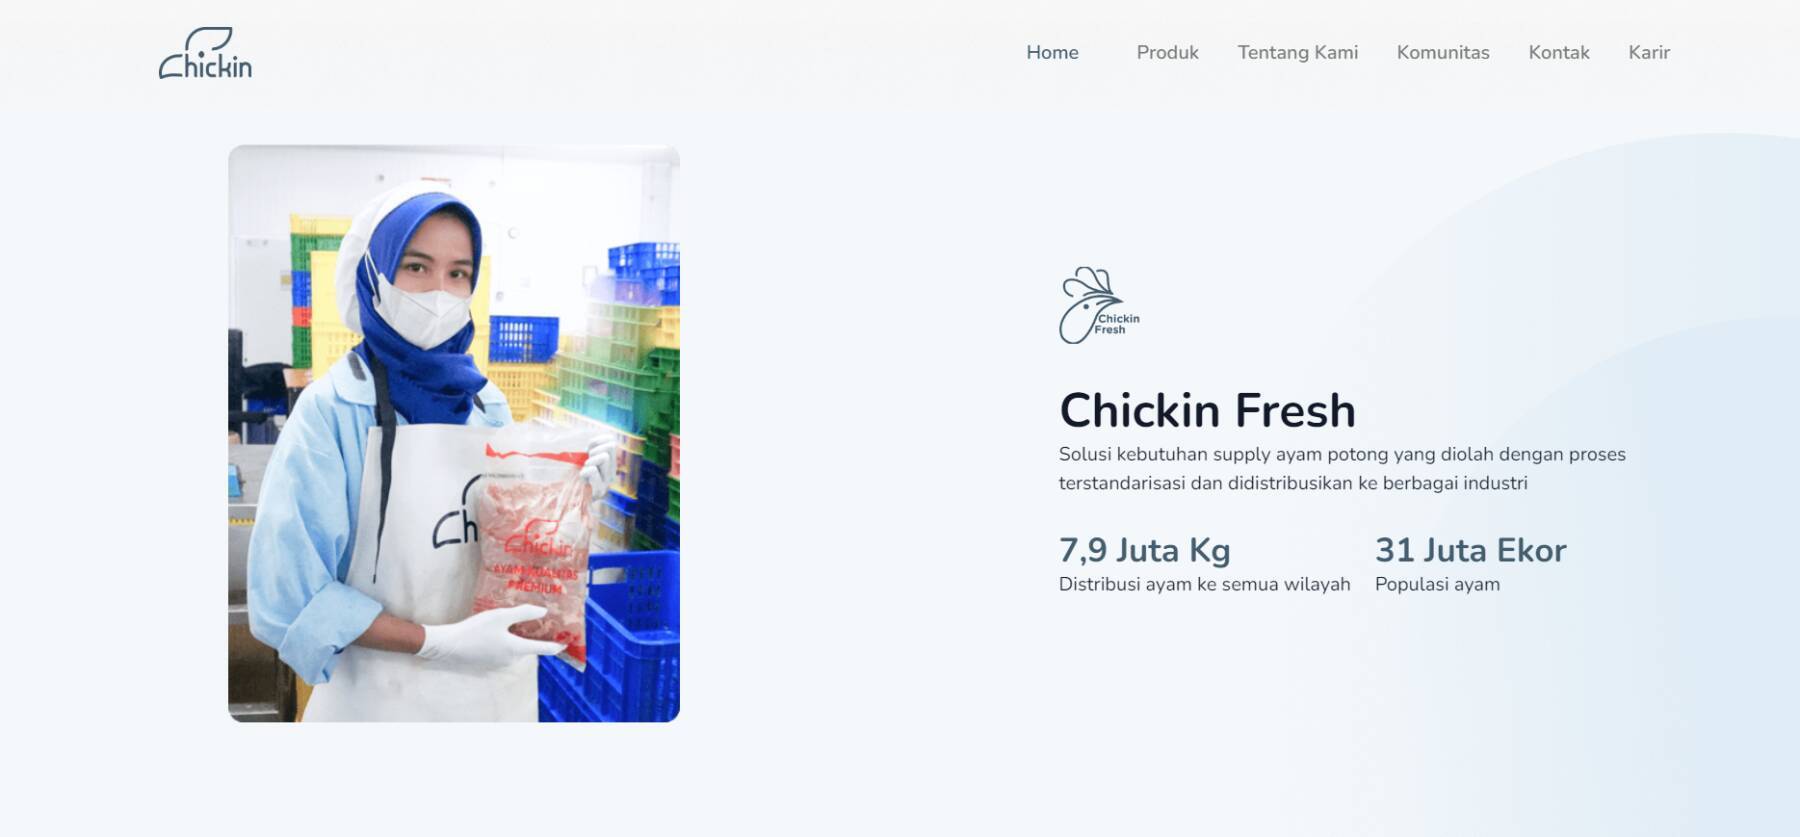 インドネシアChickin、養鶏農家向けIoTデバイス提供でたんぱく質供給に貢献